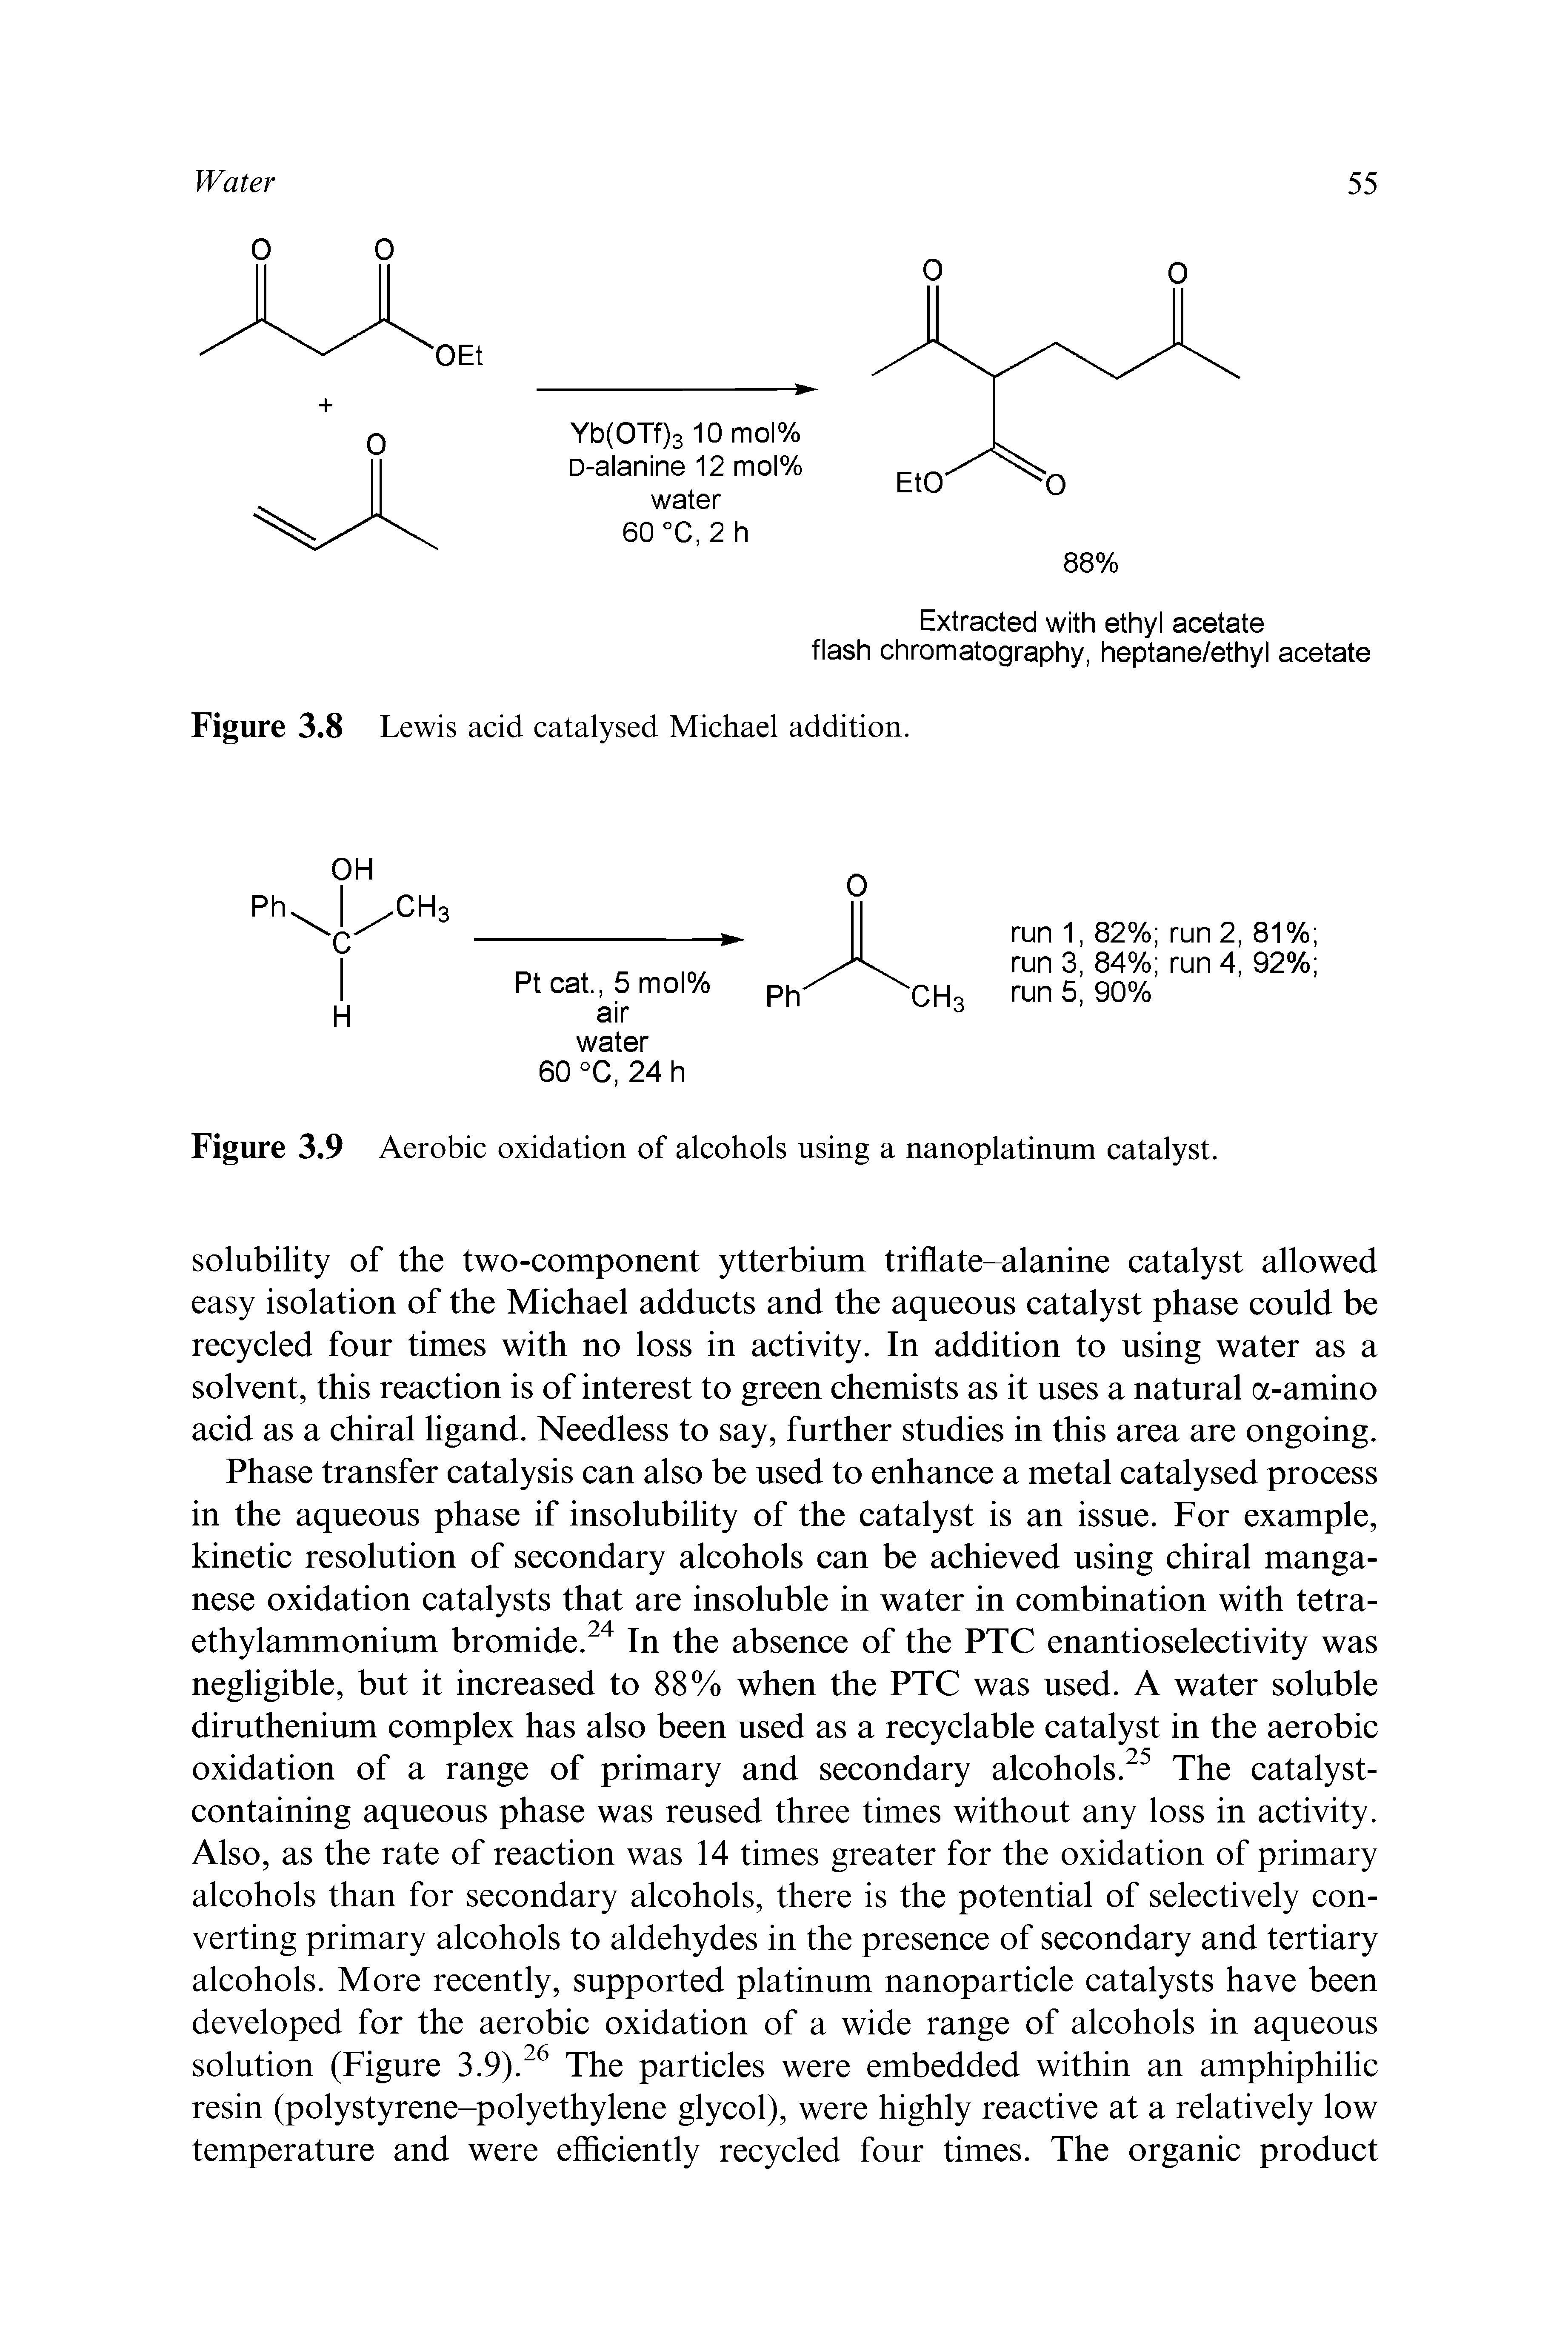 Figure 3.8 Lewis acid catalysed Michael addition.